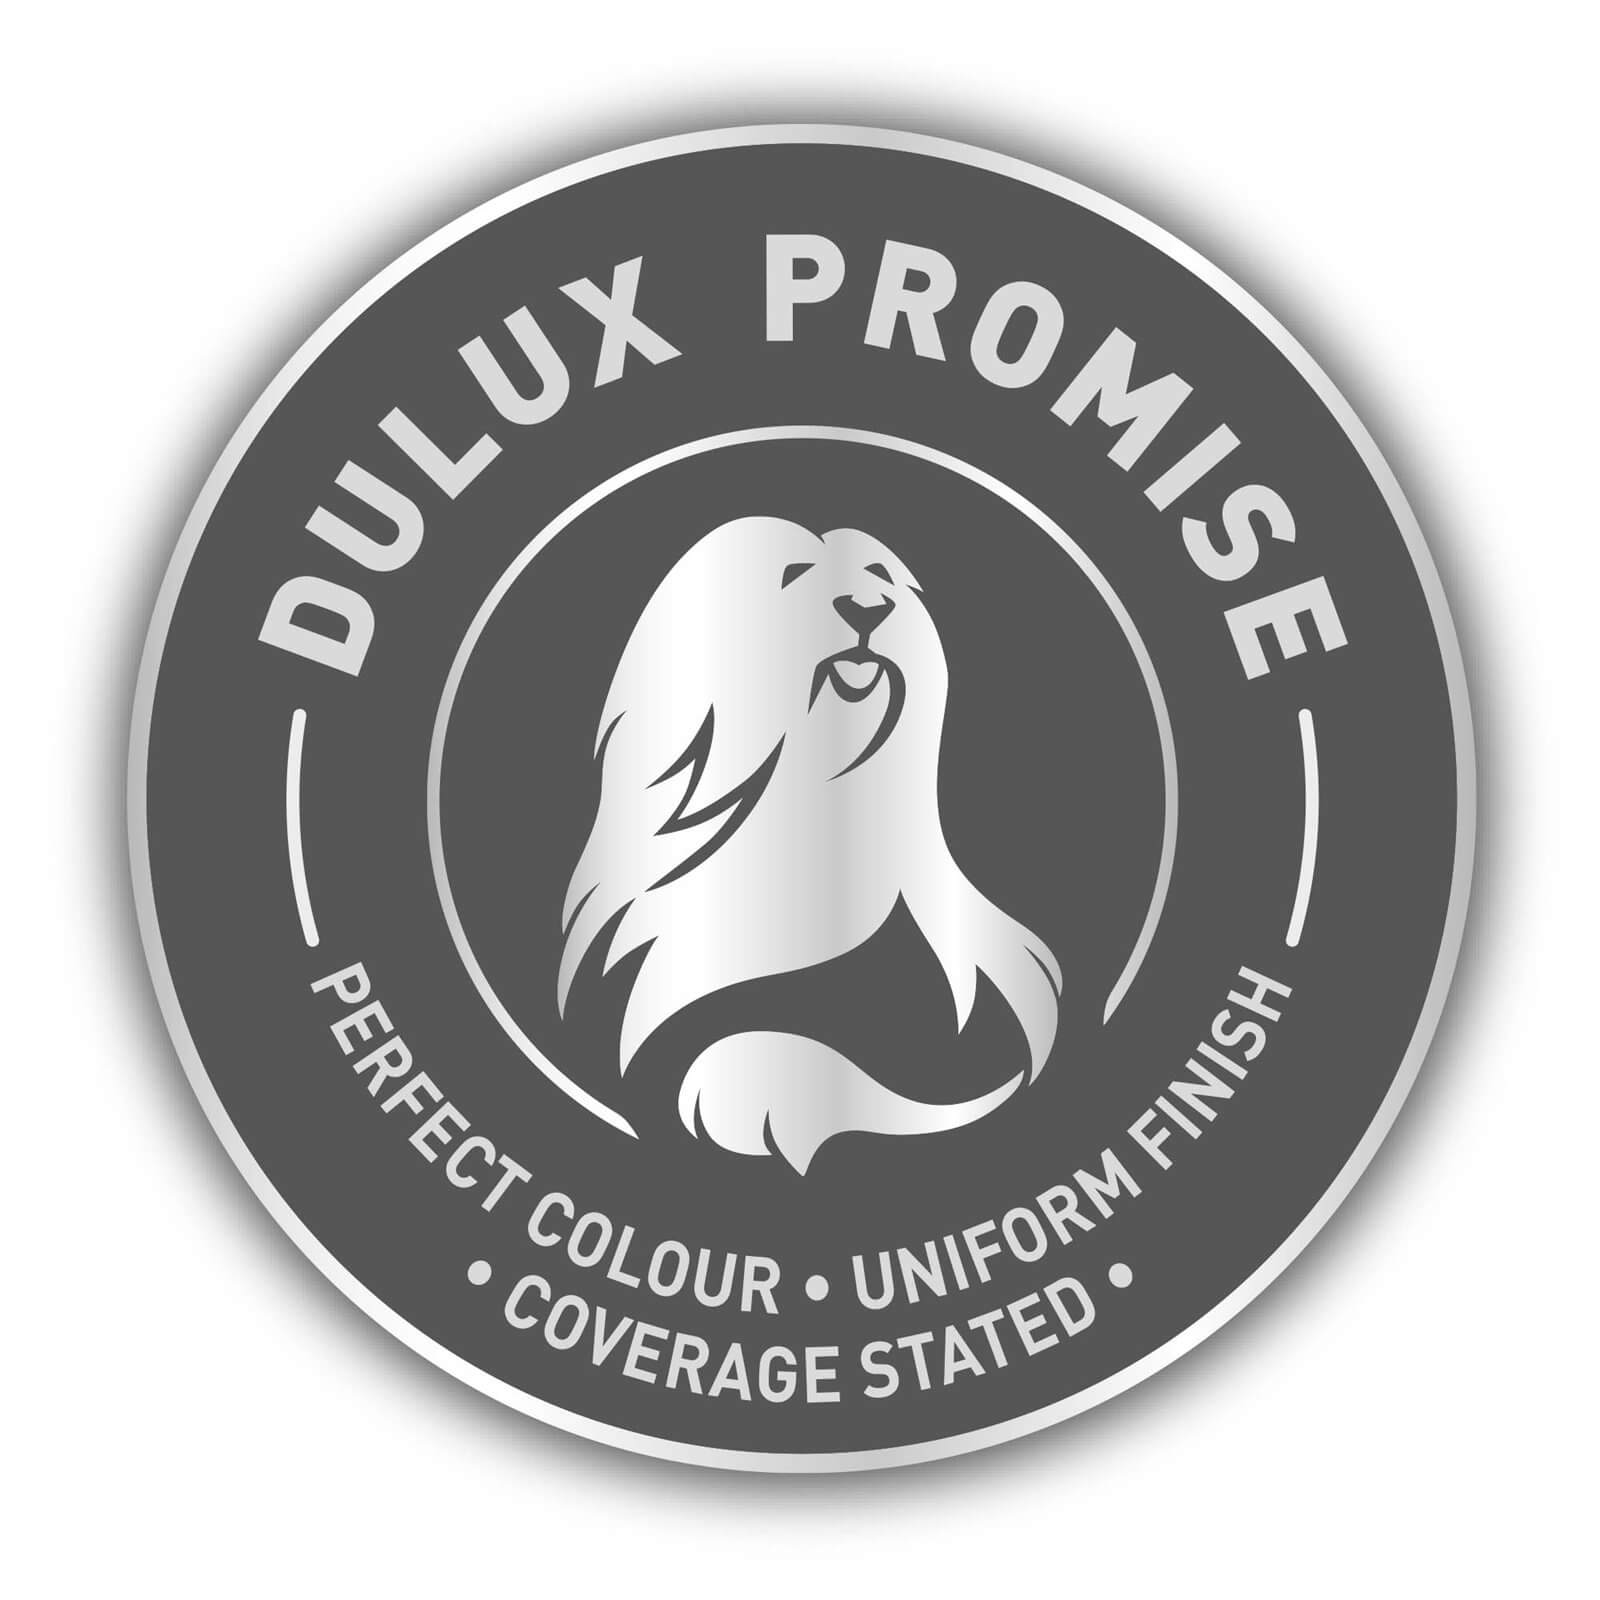 Dulux Silk Emulsion Paint Natural Slate - 2.5L